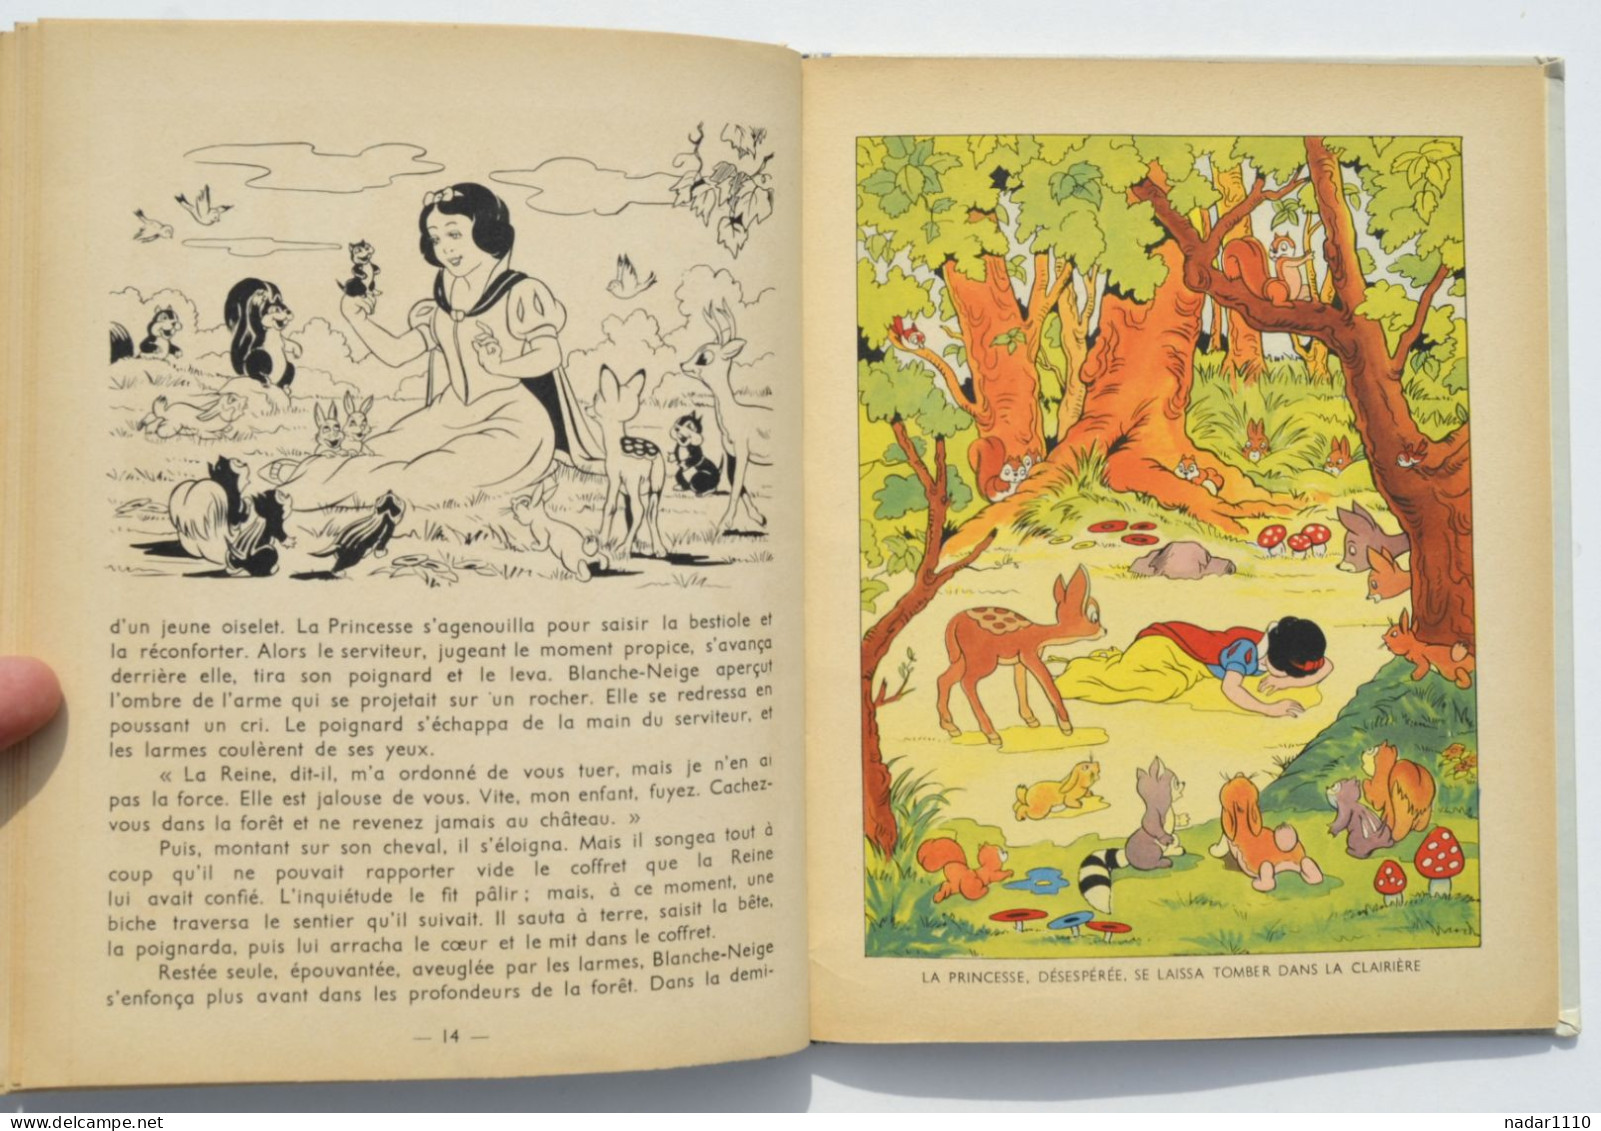 Enfantina / Blanche-Neige et les septs nains - Walt Disney - Hachette, EO 1938